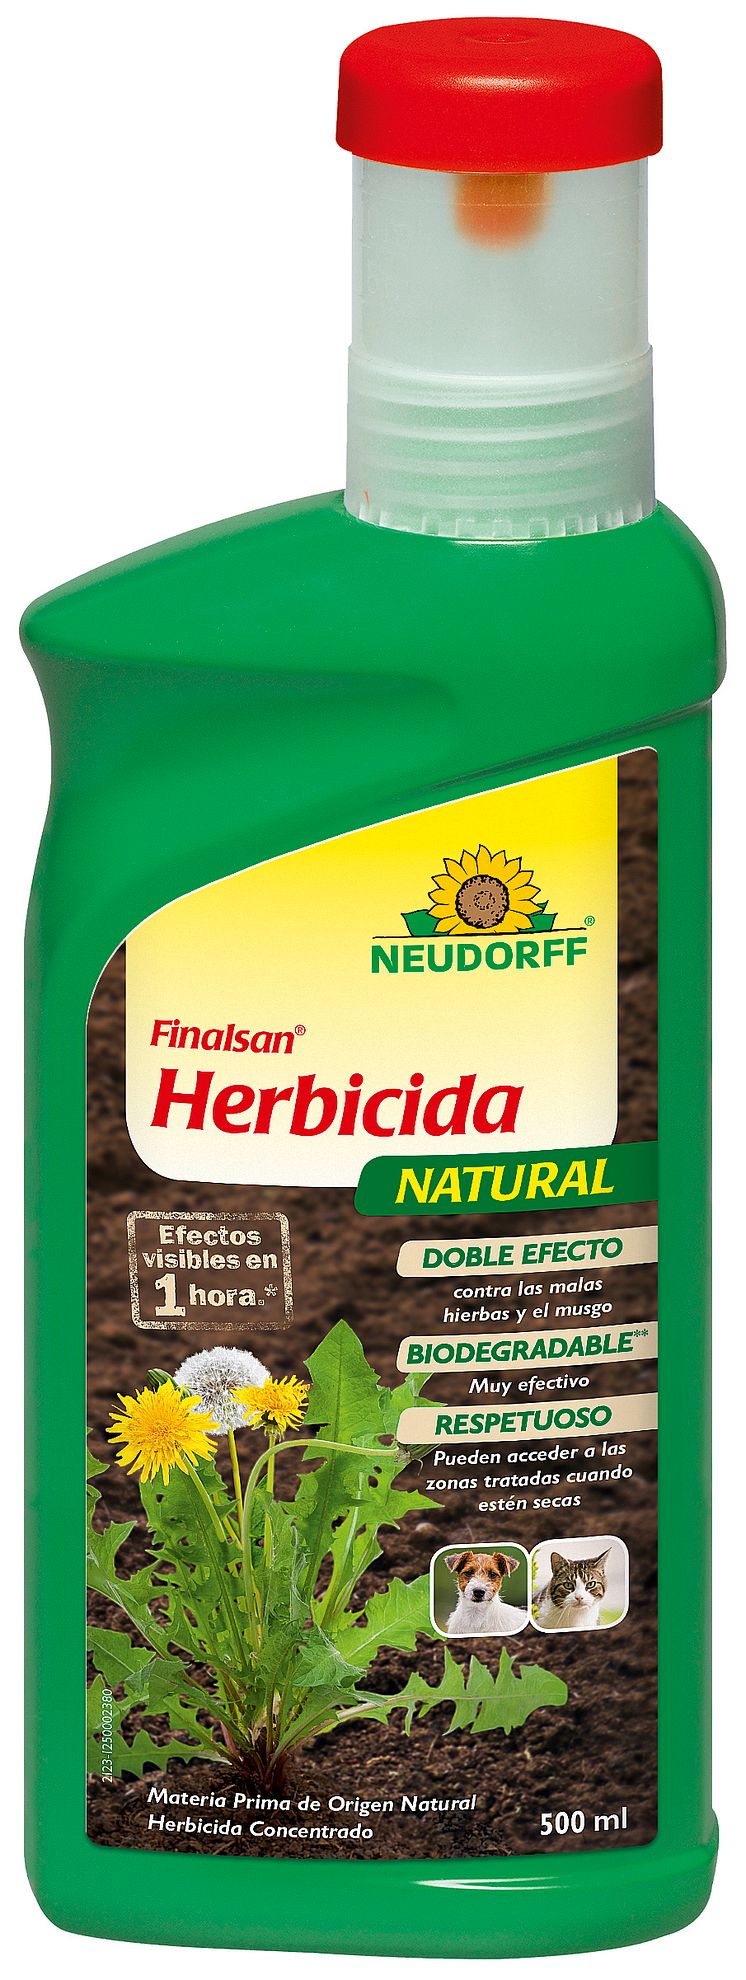 4005240175958 Finalsan Herbicidia Natural Concentrado 500ml (ES)_rgb.jpg